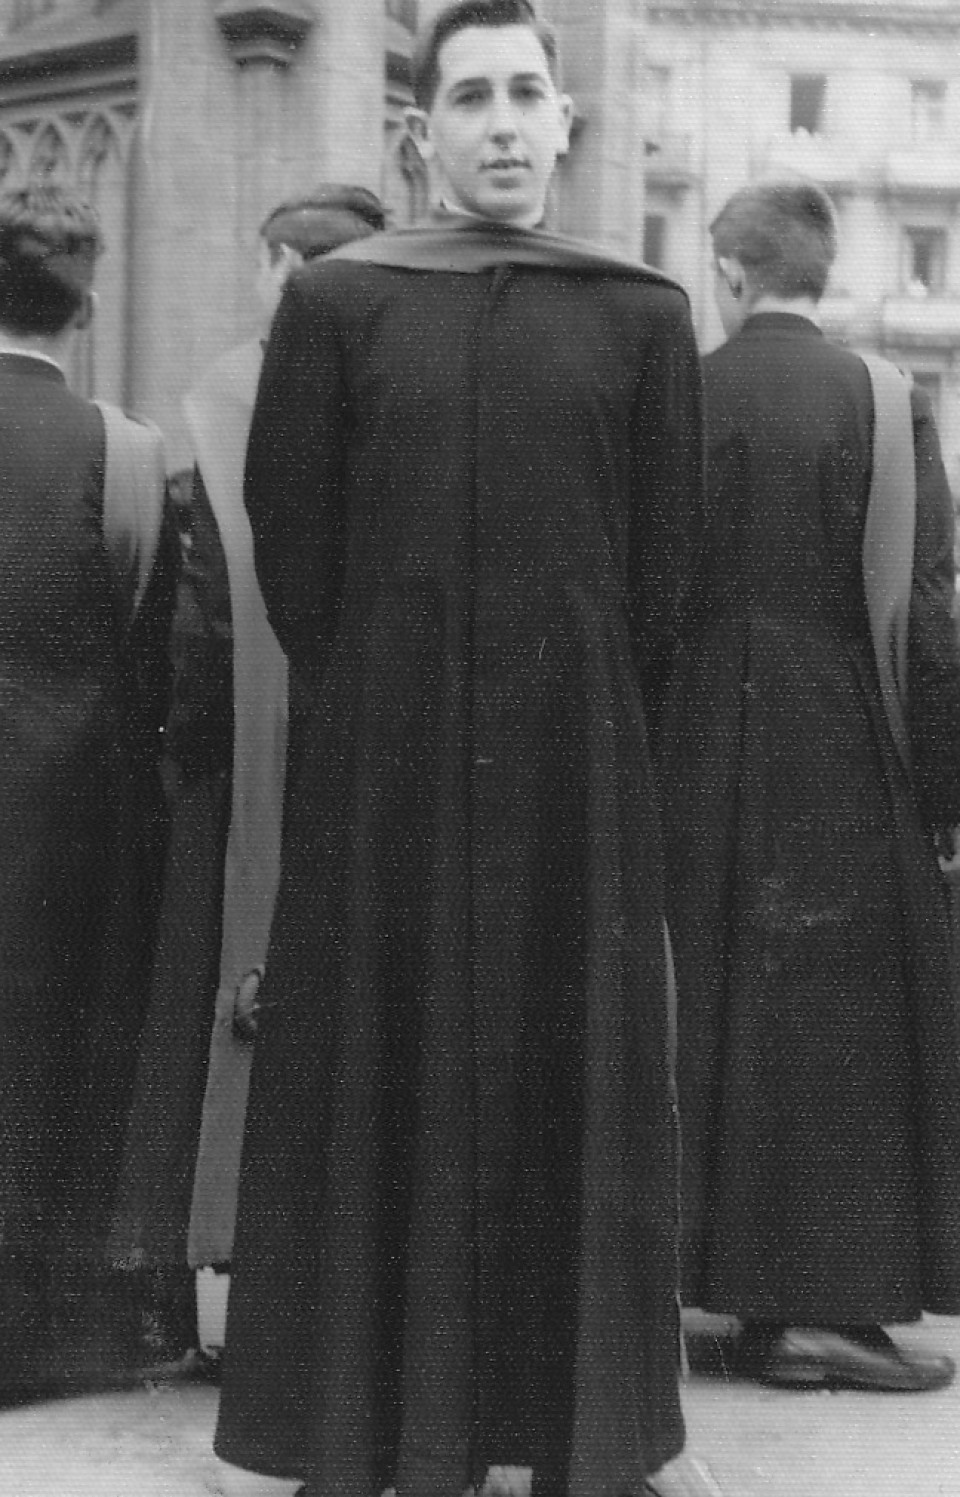 Joseba Artzai Onaren katedralean. 1960ko hamarkada